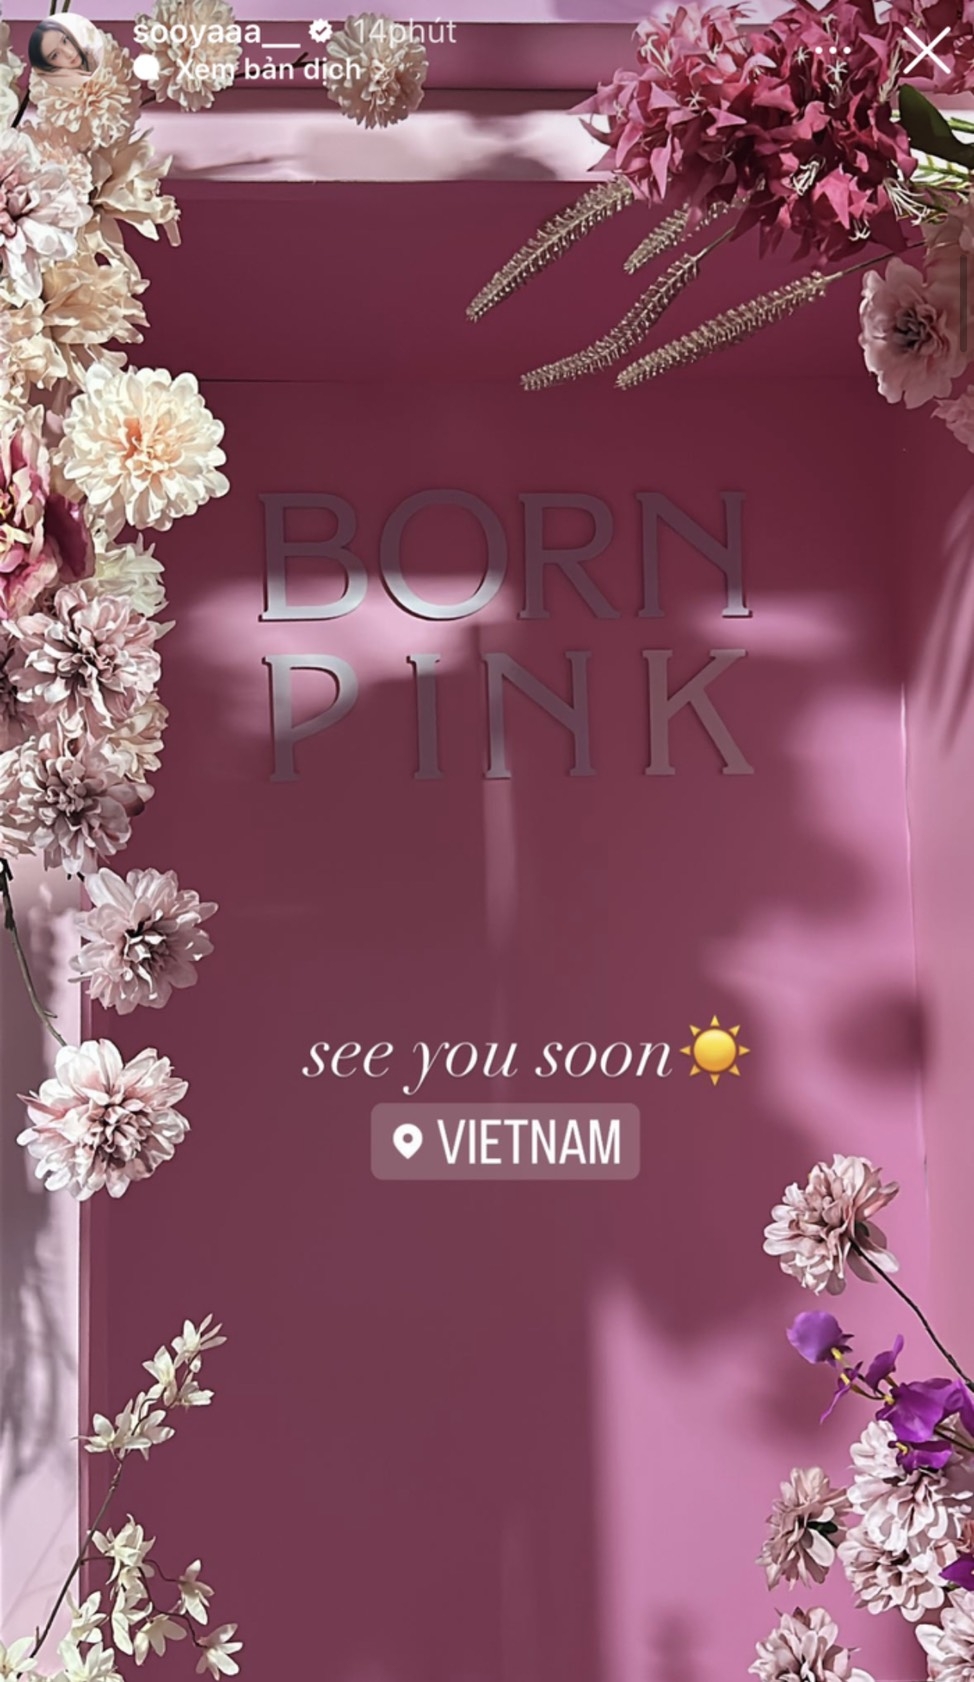 Rosé check in ở Hà Nội, hào hứng với lẵng hoa fan Việt tặng